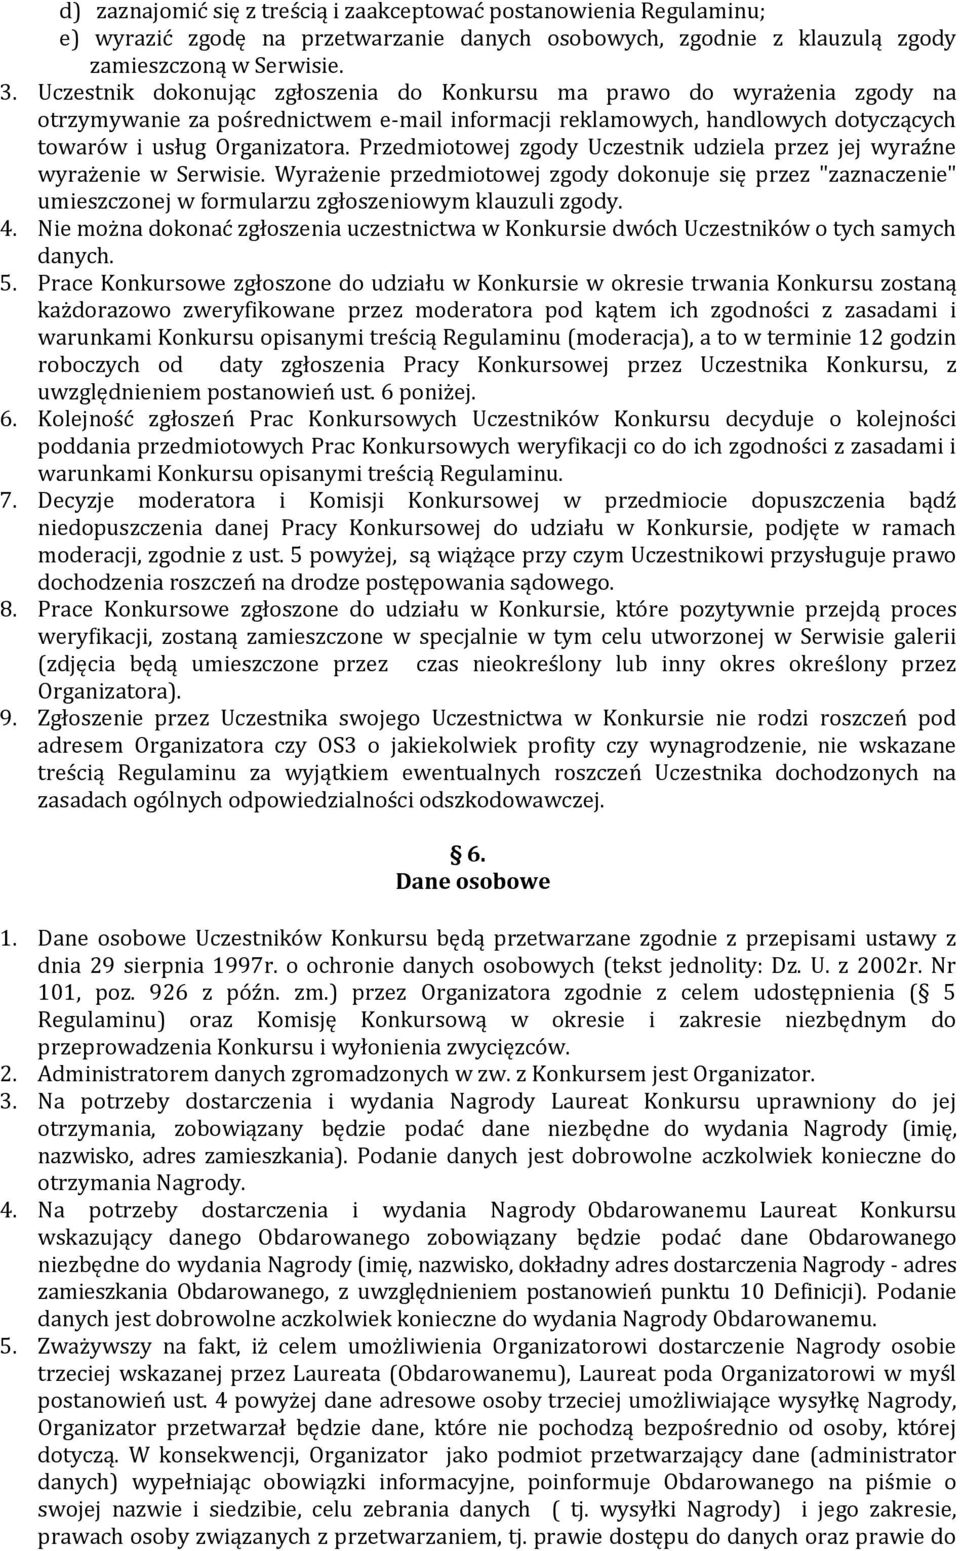 Przedmiotowej zgody Uczestnik udziela przez jej wyraźne wyrażenie w Serwisie. Wyrażenie przedmiotowej zgody dokonuje się przez "zaznaczenie" umieszczonej w formularzu zgłoszeniowym klauzuli zgody. 4.